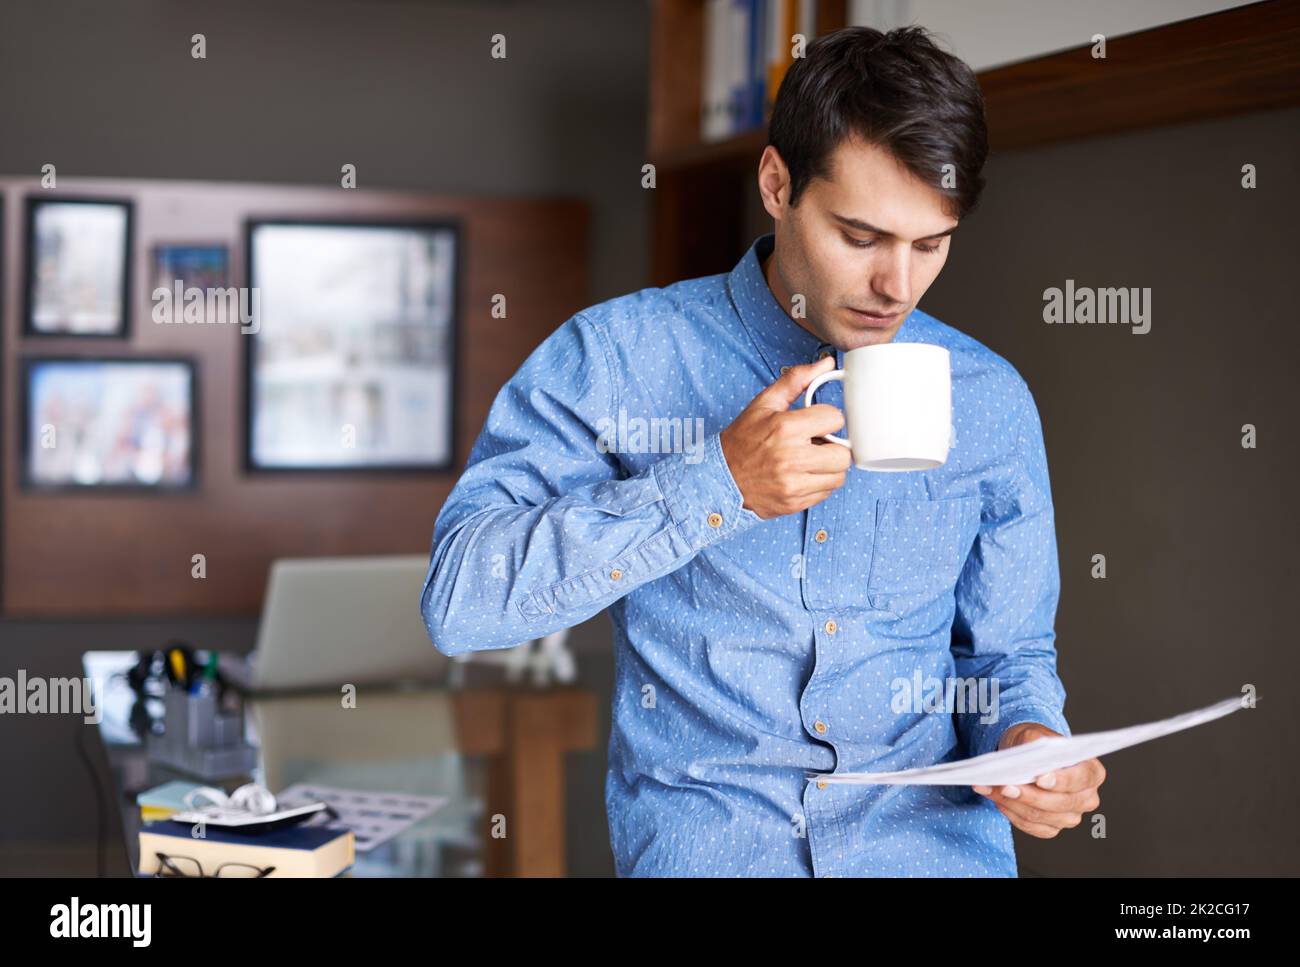 Kaffeekonzentration. Ein junger Geschäftsmann trinkt Kaffee, während er einige Papiere durchläuft. Stockfoto